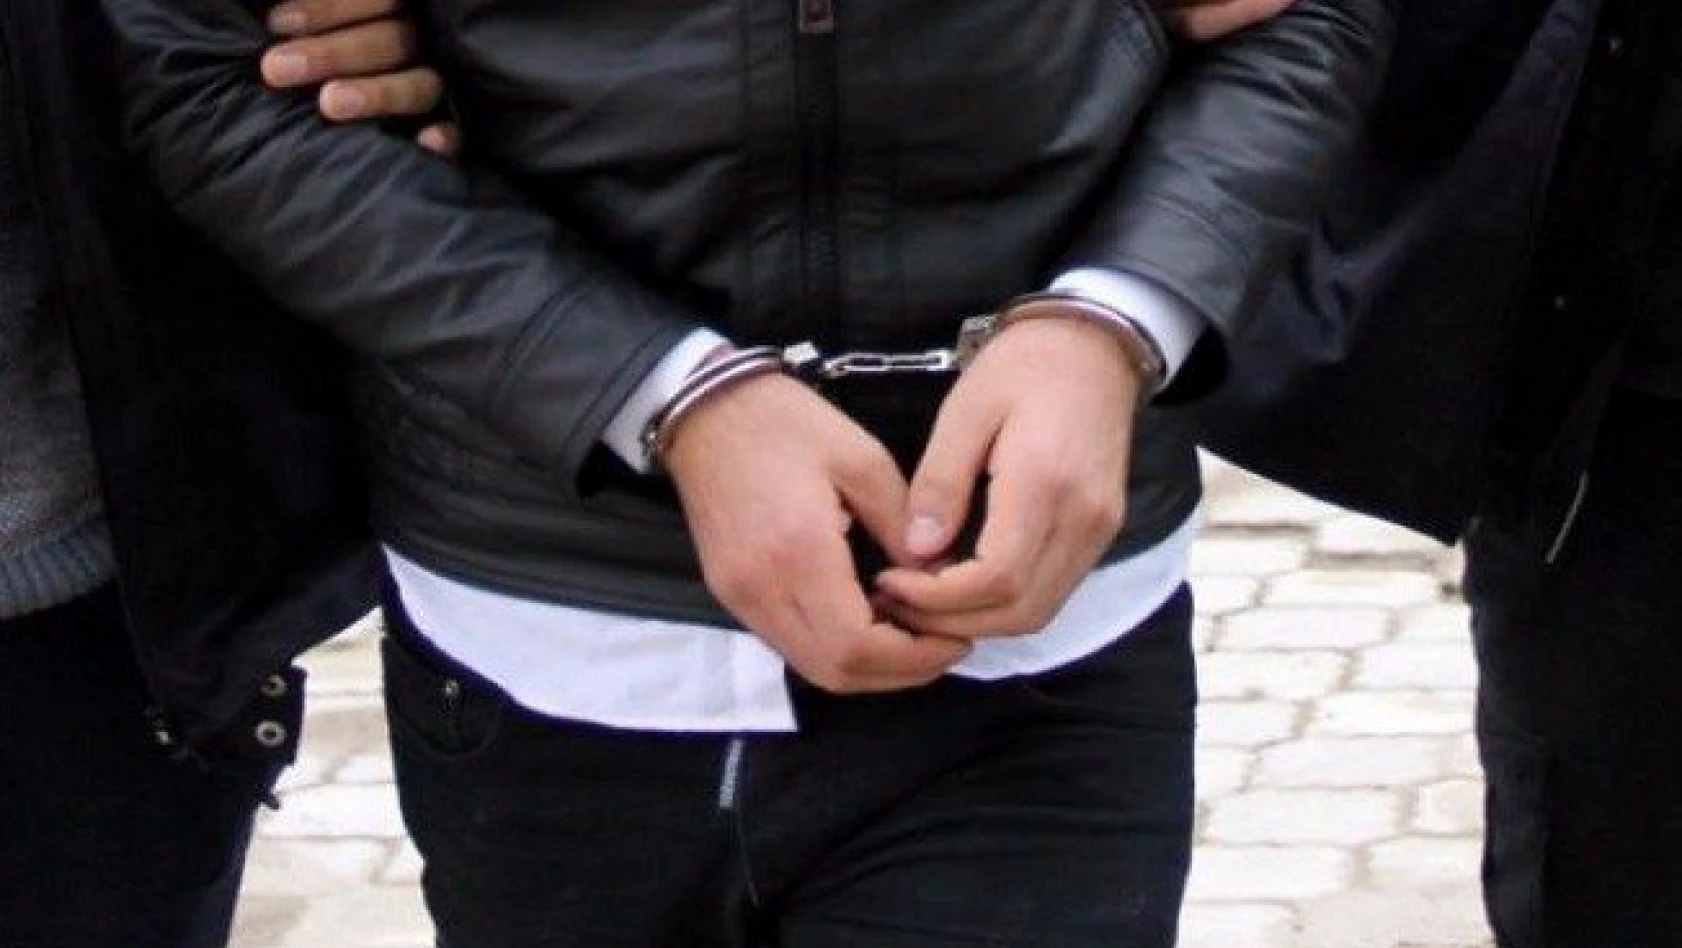 Vali Yardımcısı FETÖ'den gözaltına alındı